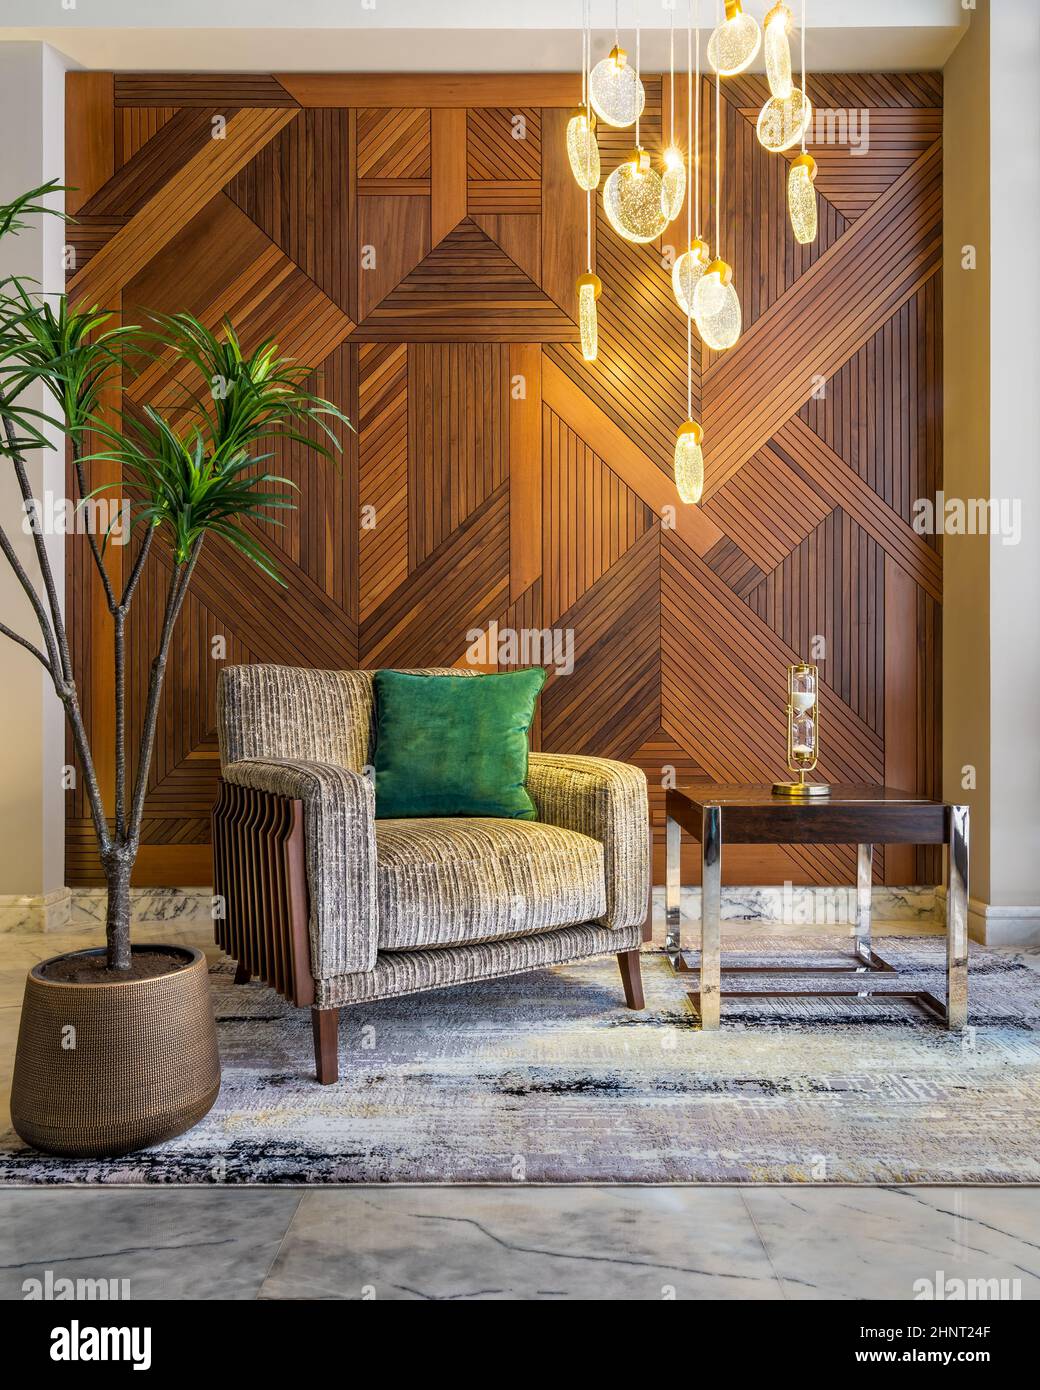 Moderner beigefarbener Sessel, kleiner Couchtisch, Blumentopf, moderner großer Glasleuchter und dekorierte Holzverkleidungen an der Wand Stockfoto